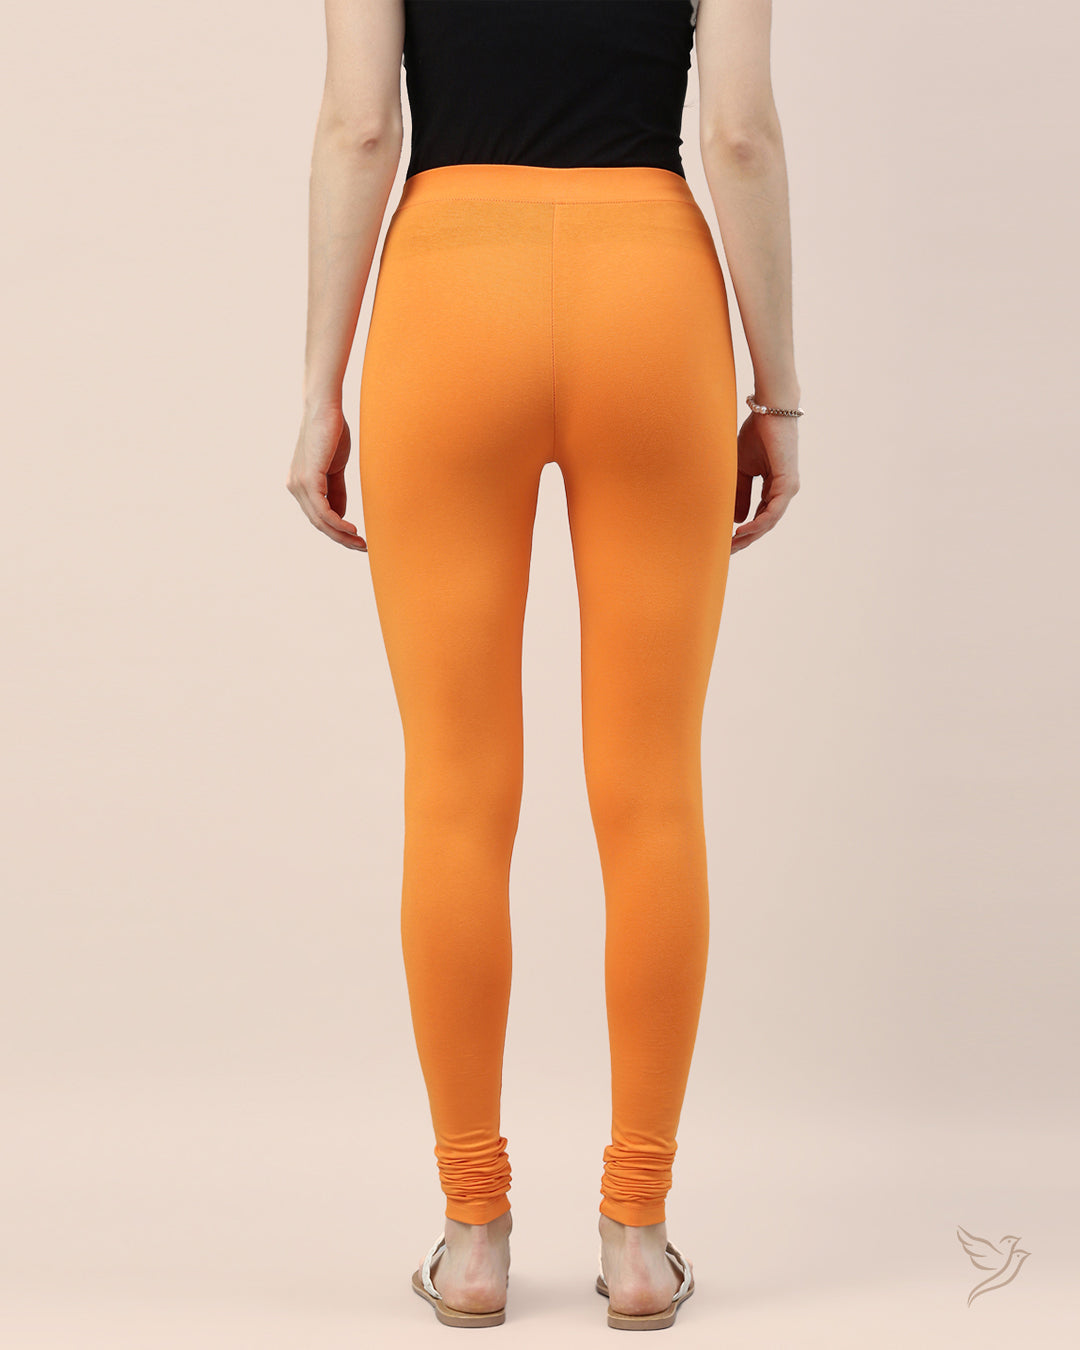 Stylish Orange Tango Cotton Churidar Legging